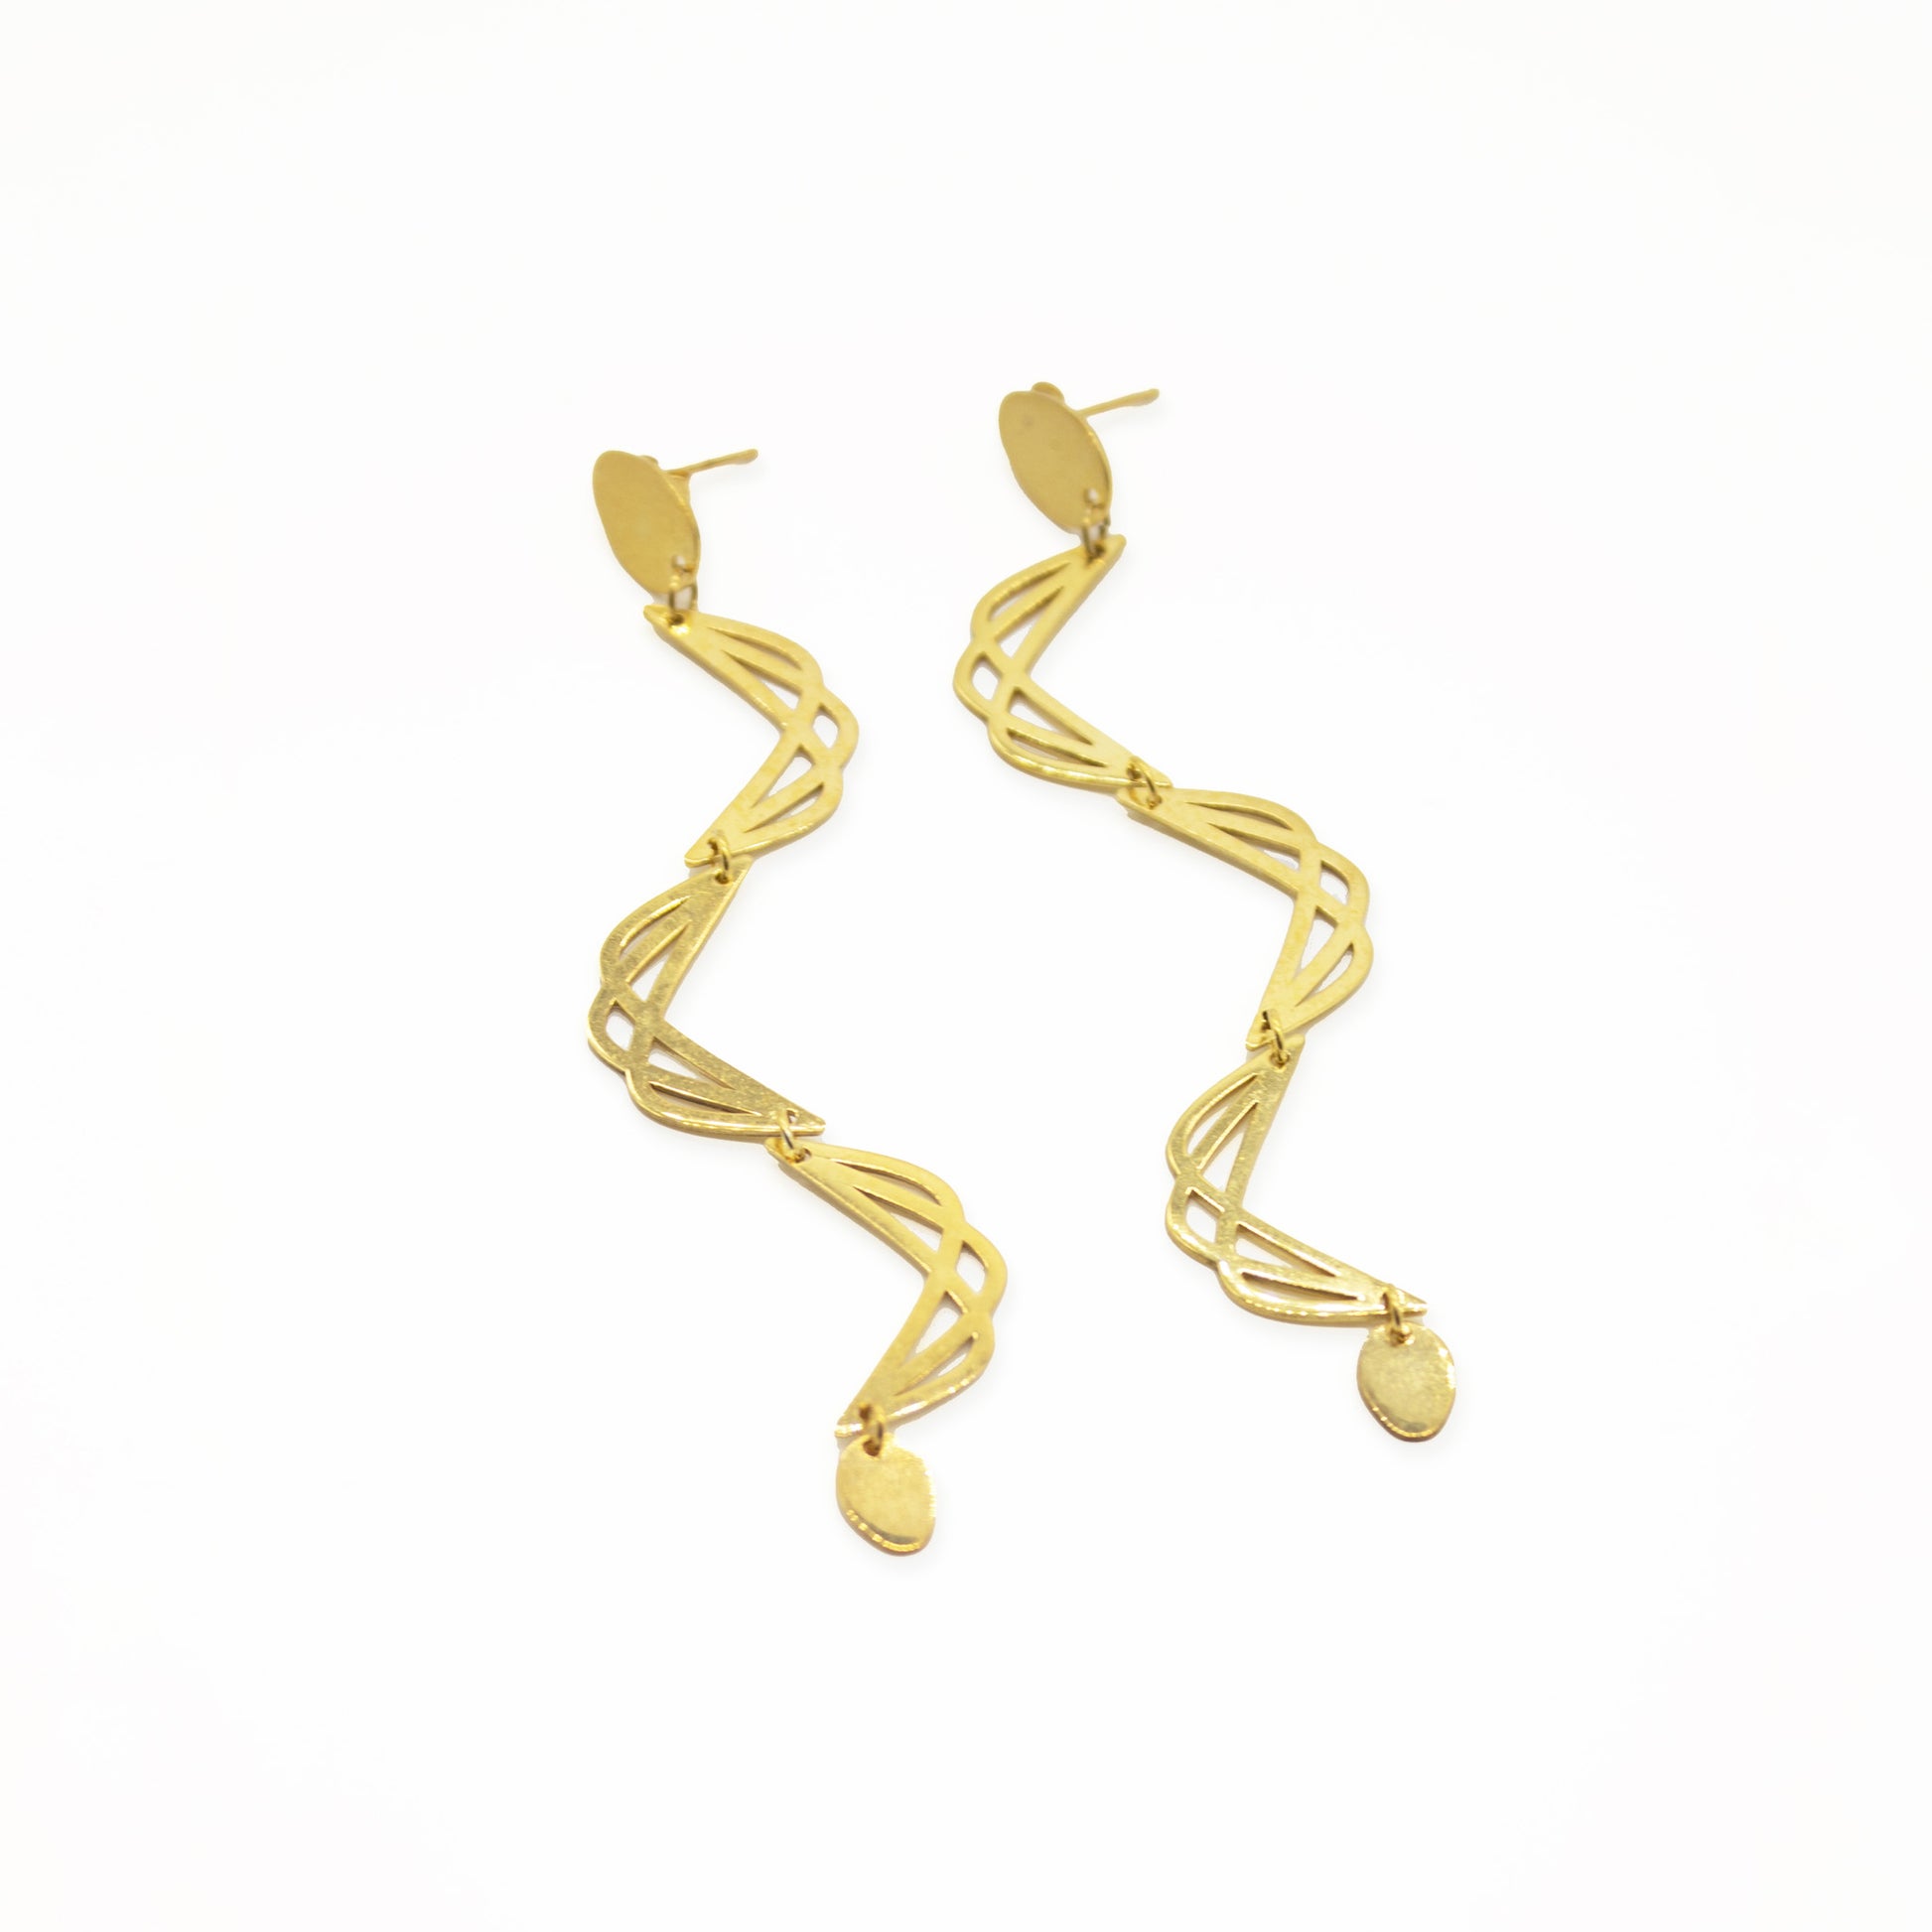 Guimard Earrings Eight / silver 925, 18kt gold plated earrings inspirados en el movimiento ART NOUVEAU del siglo XIX como homenaje al Arquitecto de la Opera de Paris, Hector Guimard / El Art Nouveau comprende formas curvas, naturales y sensuales.